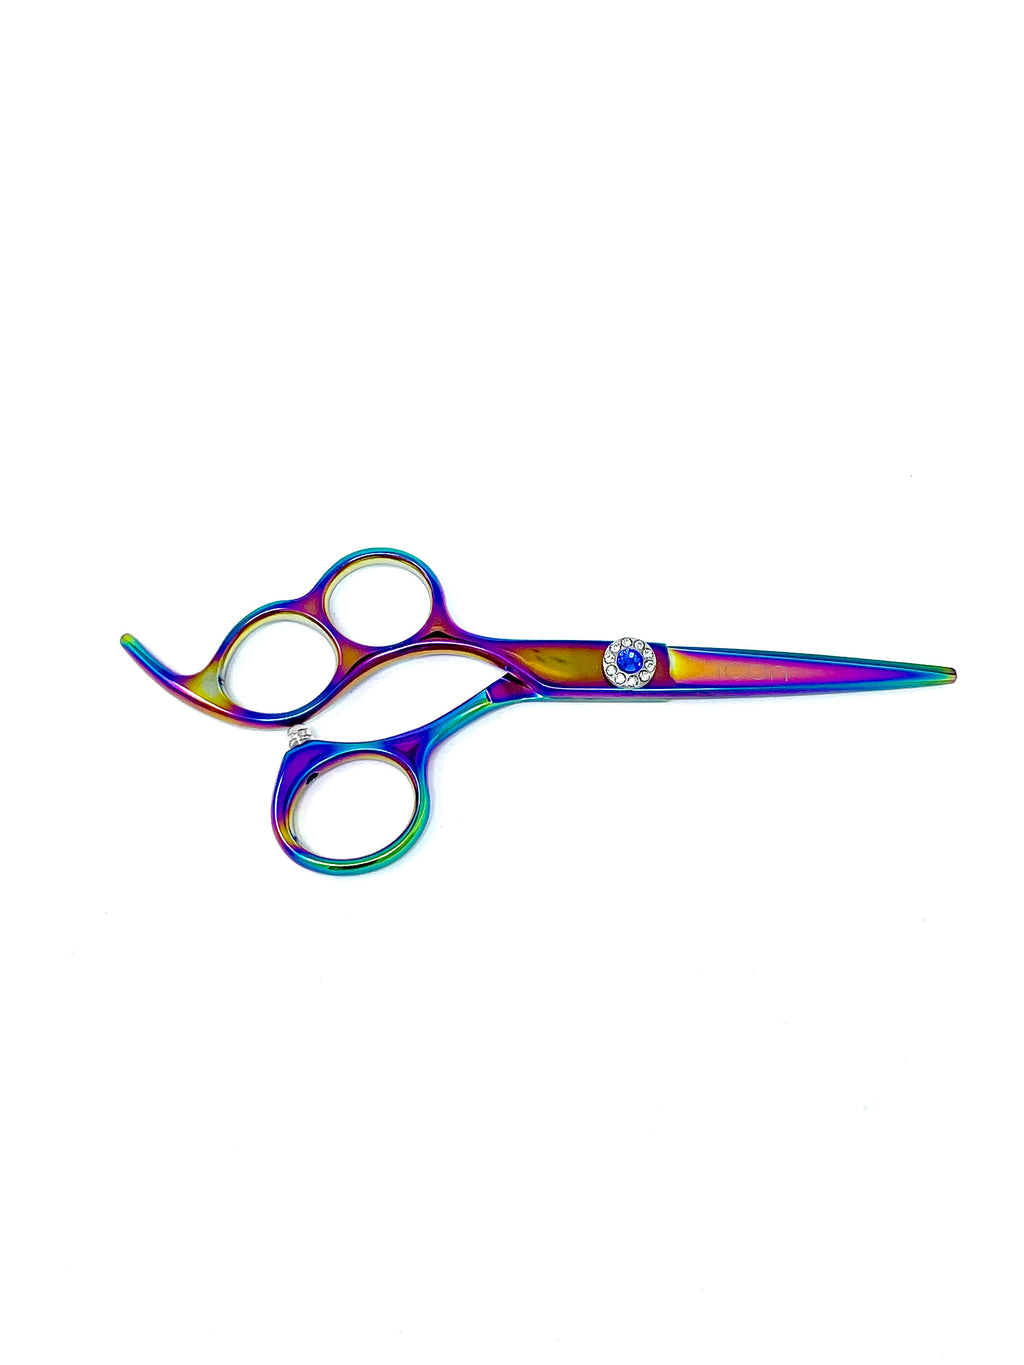 Scissors - Basic Reflex 3D Vivo - Left-handed